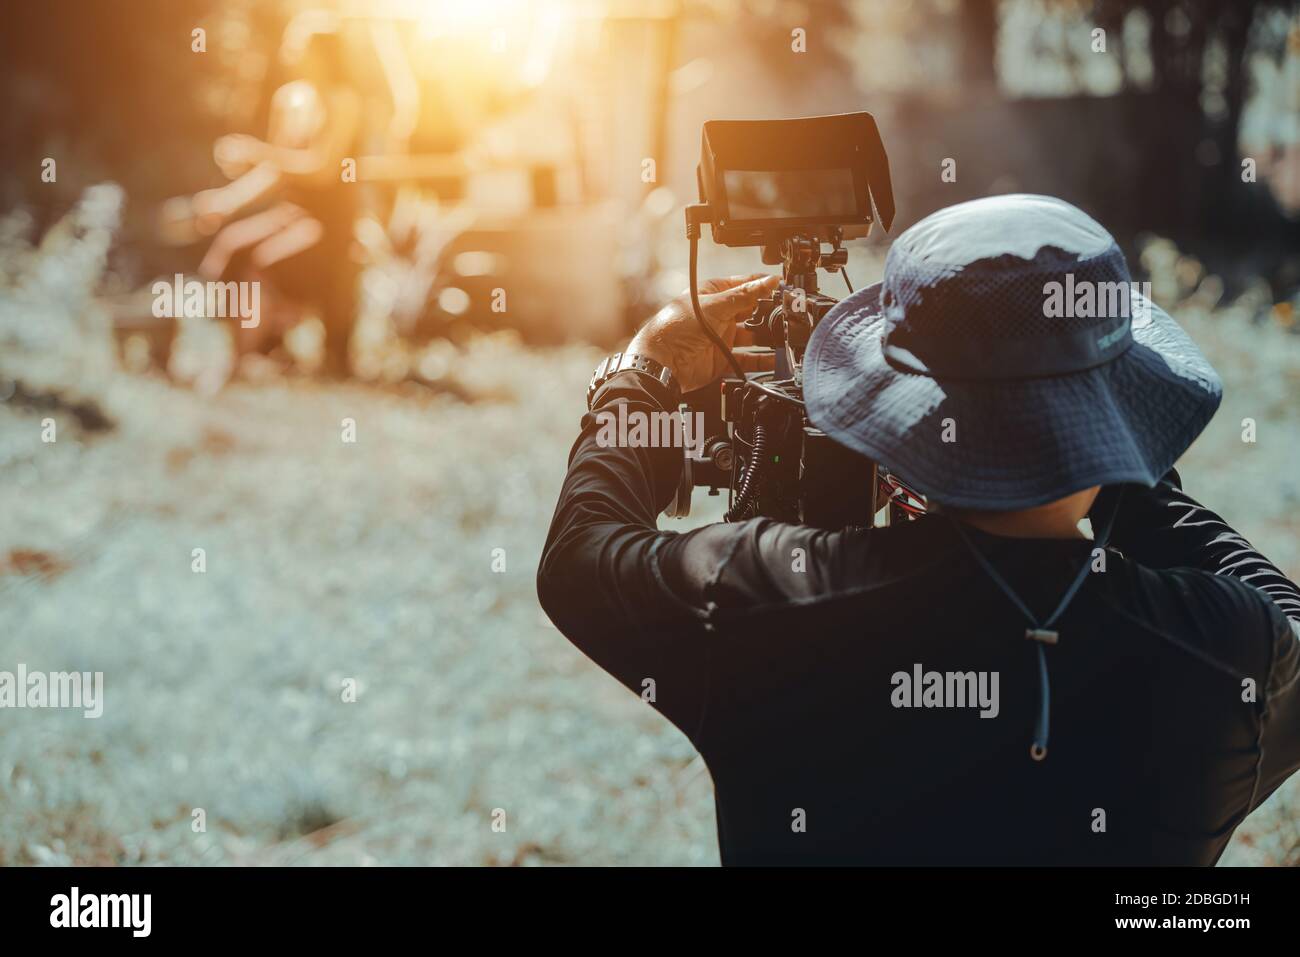 Behind cameraman operating camera shooting movie Stock Photo